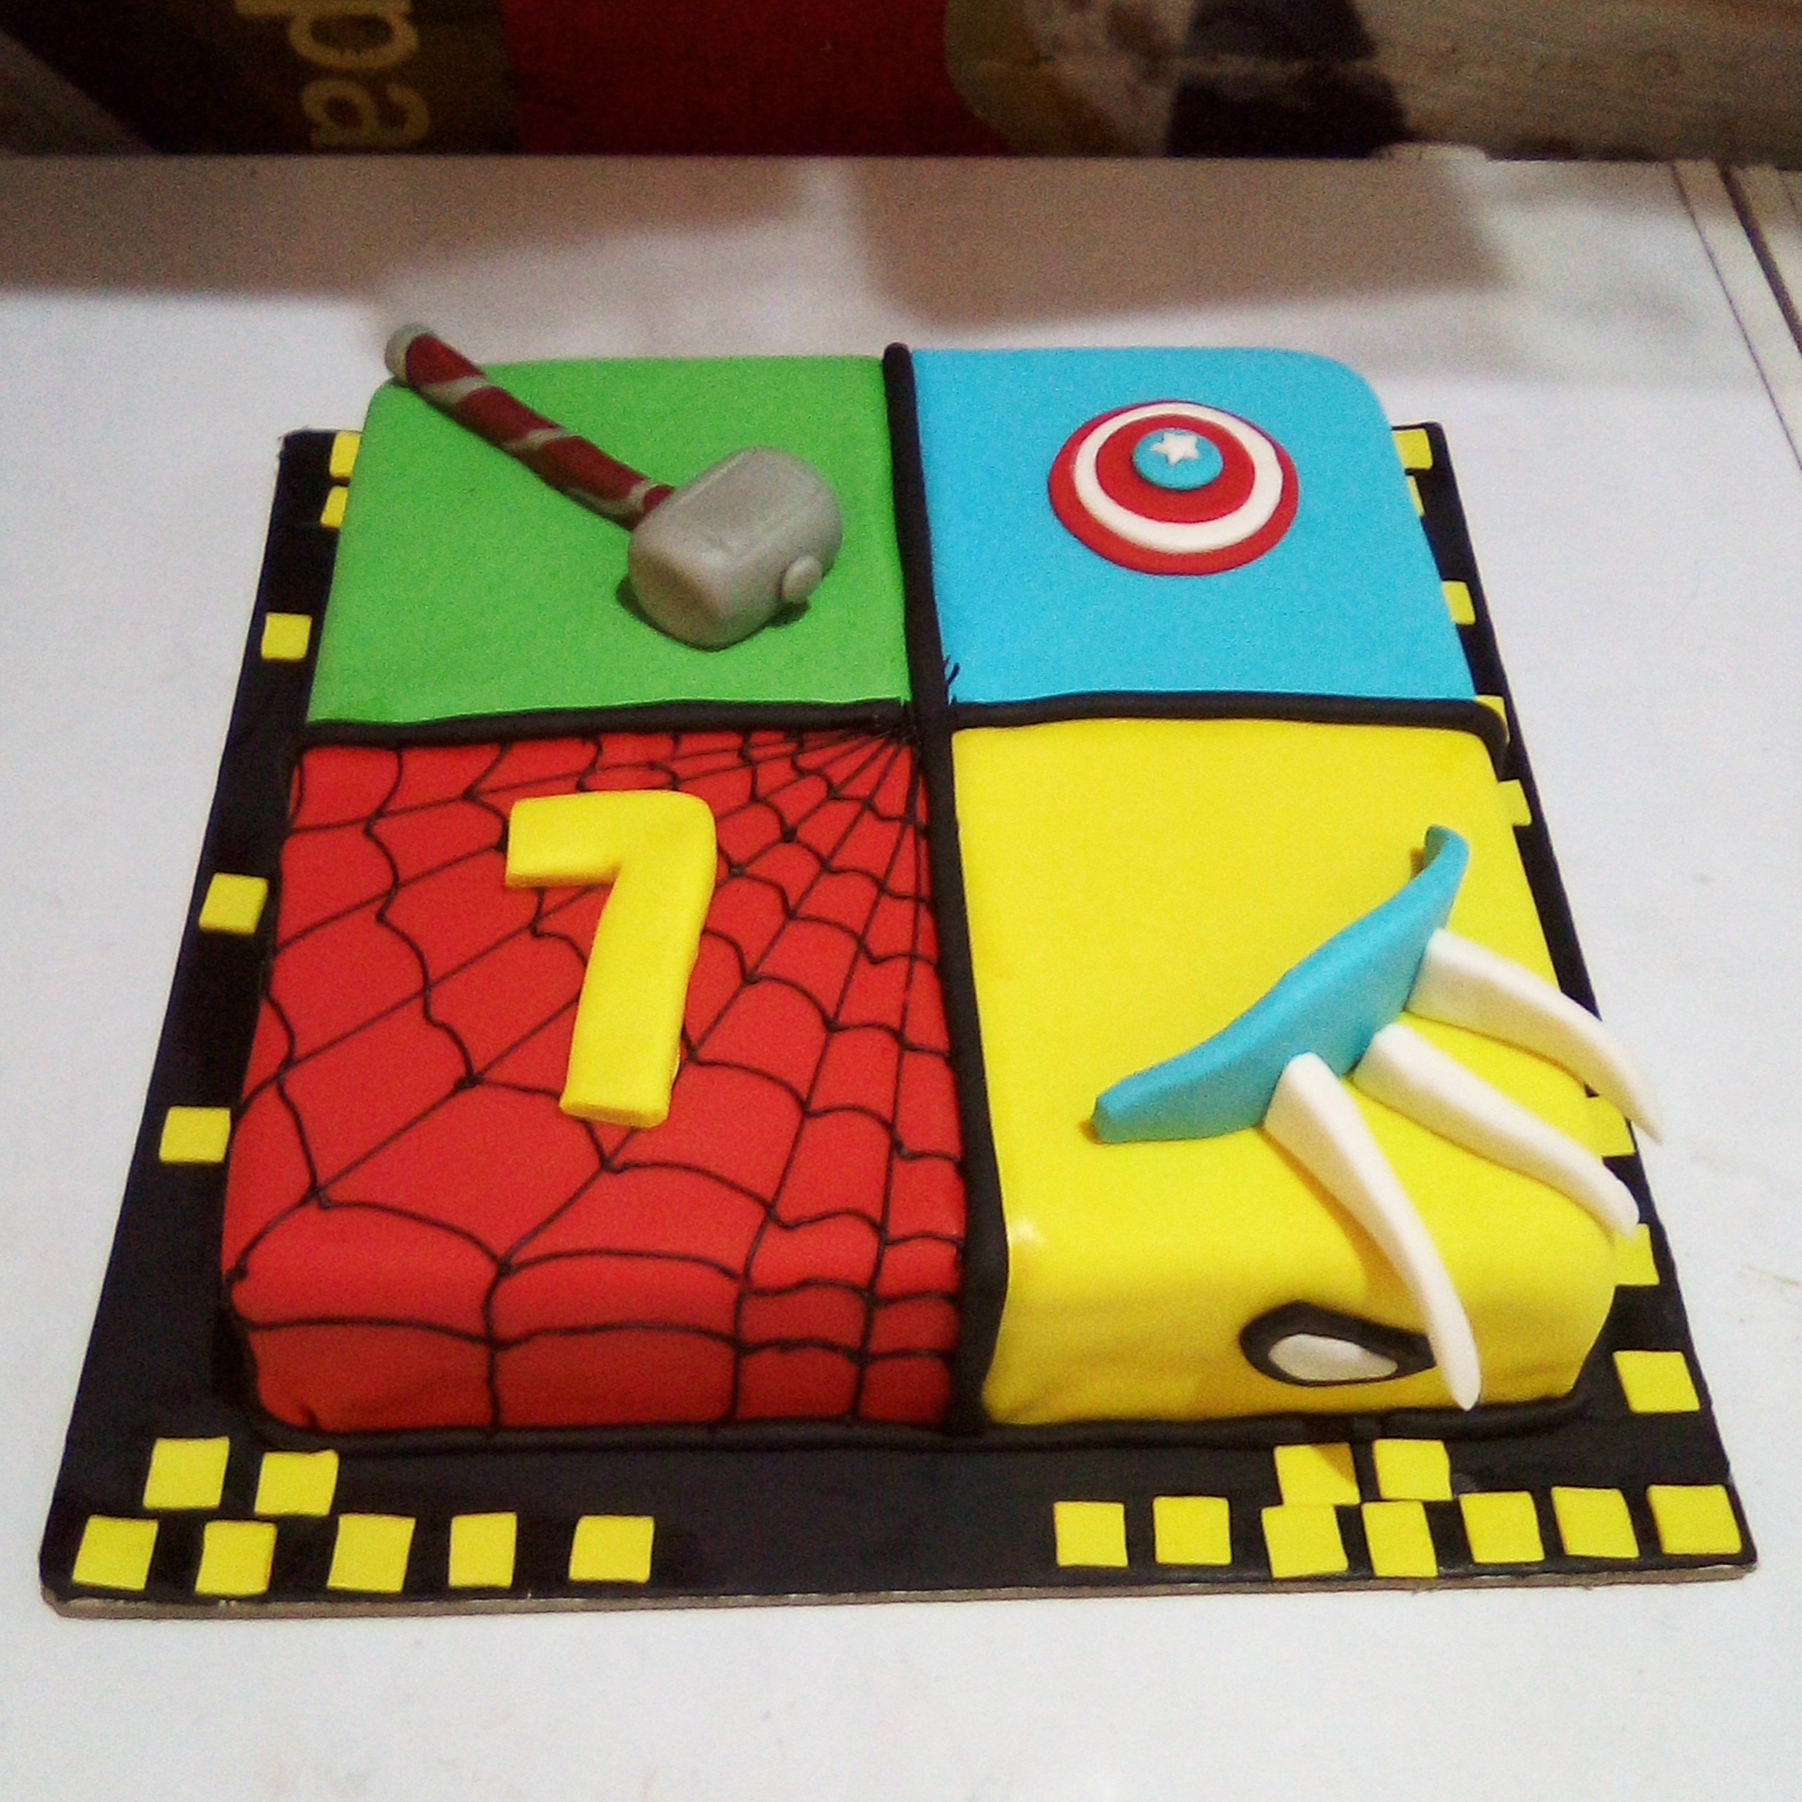 Avengers Theme Cakes For Birthday Online | YummyCake